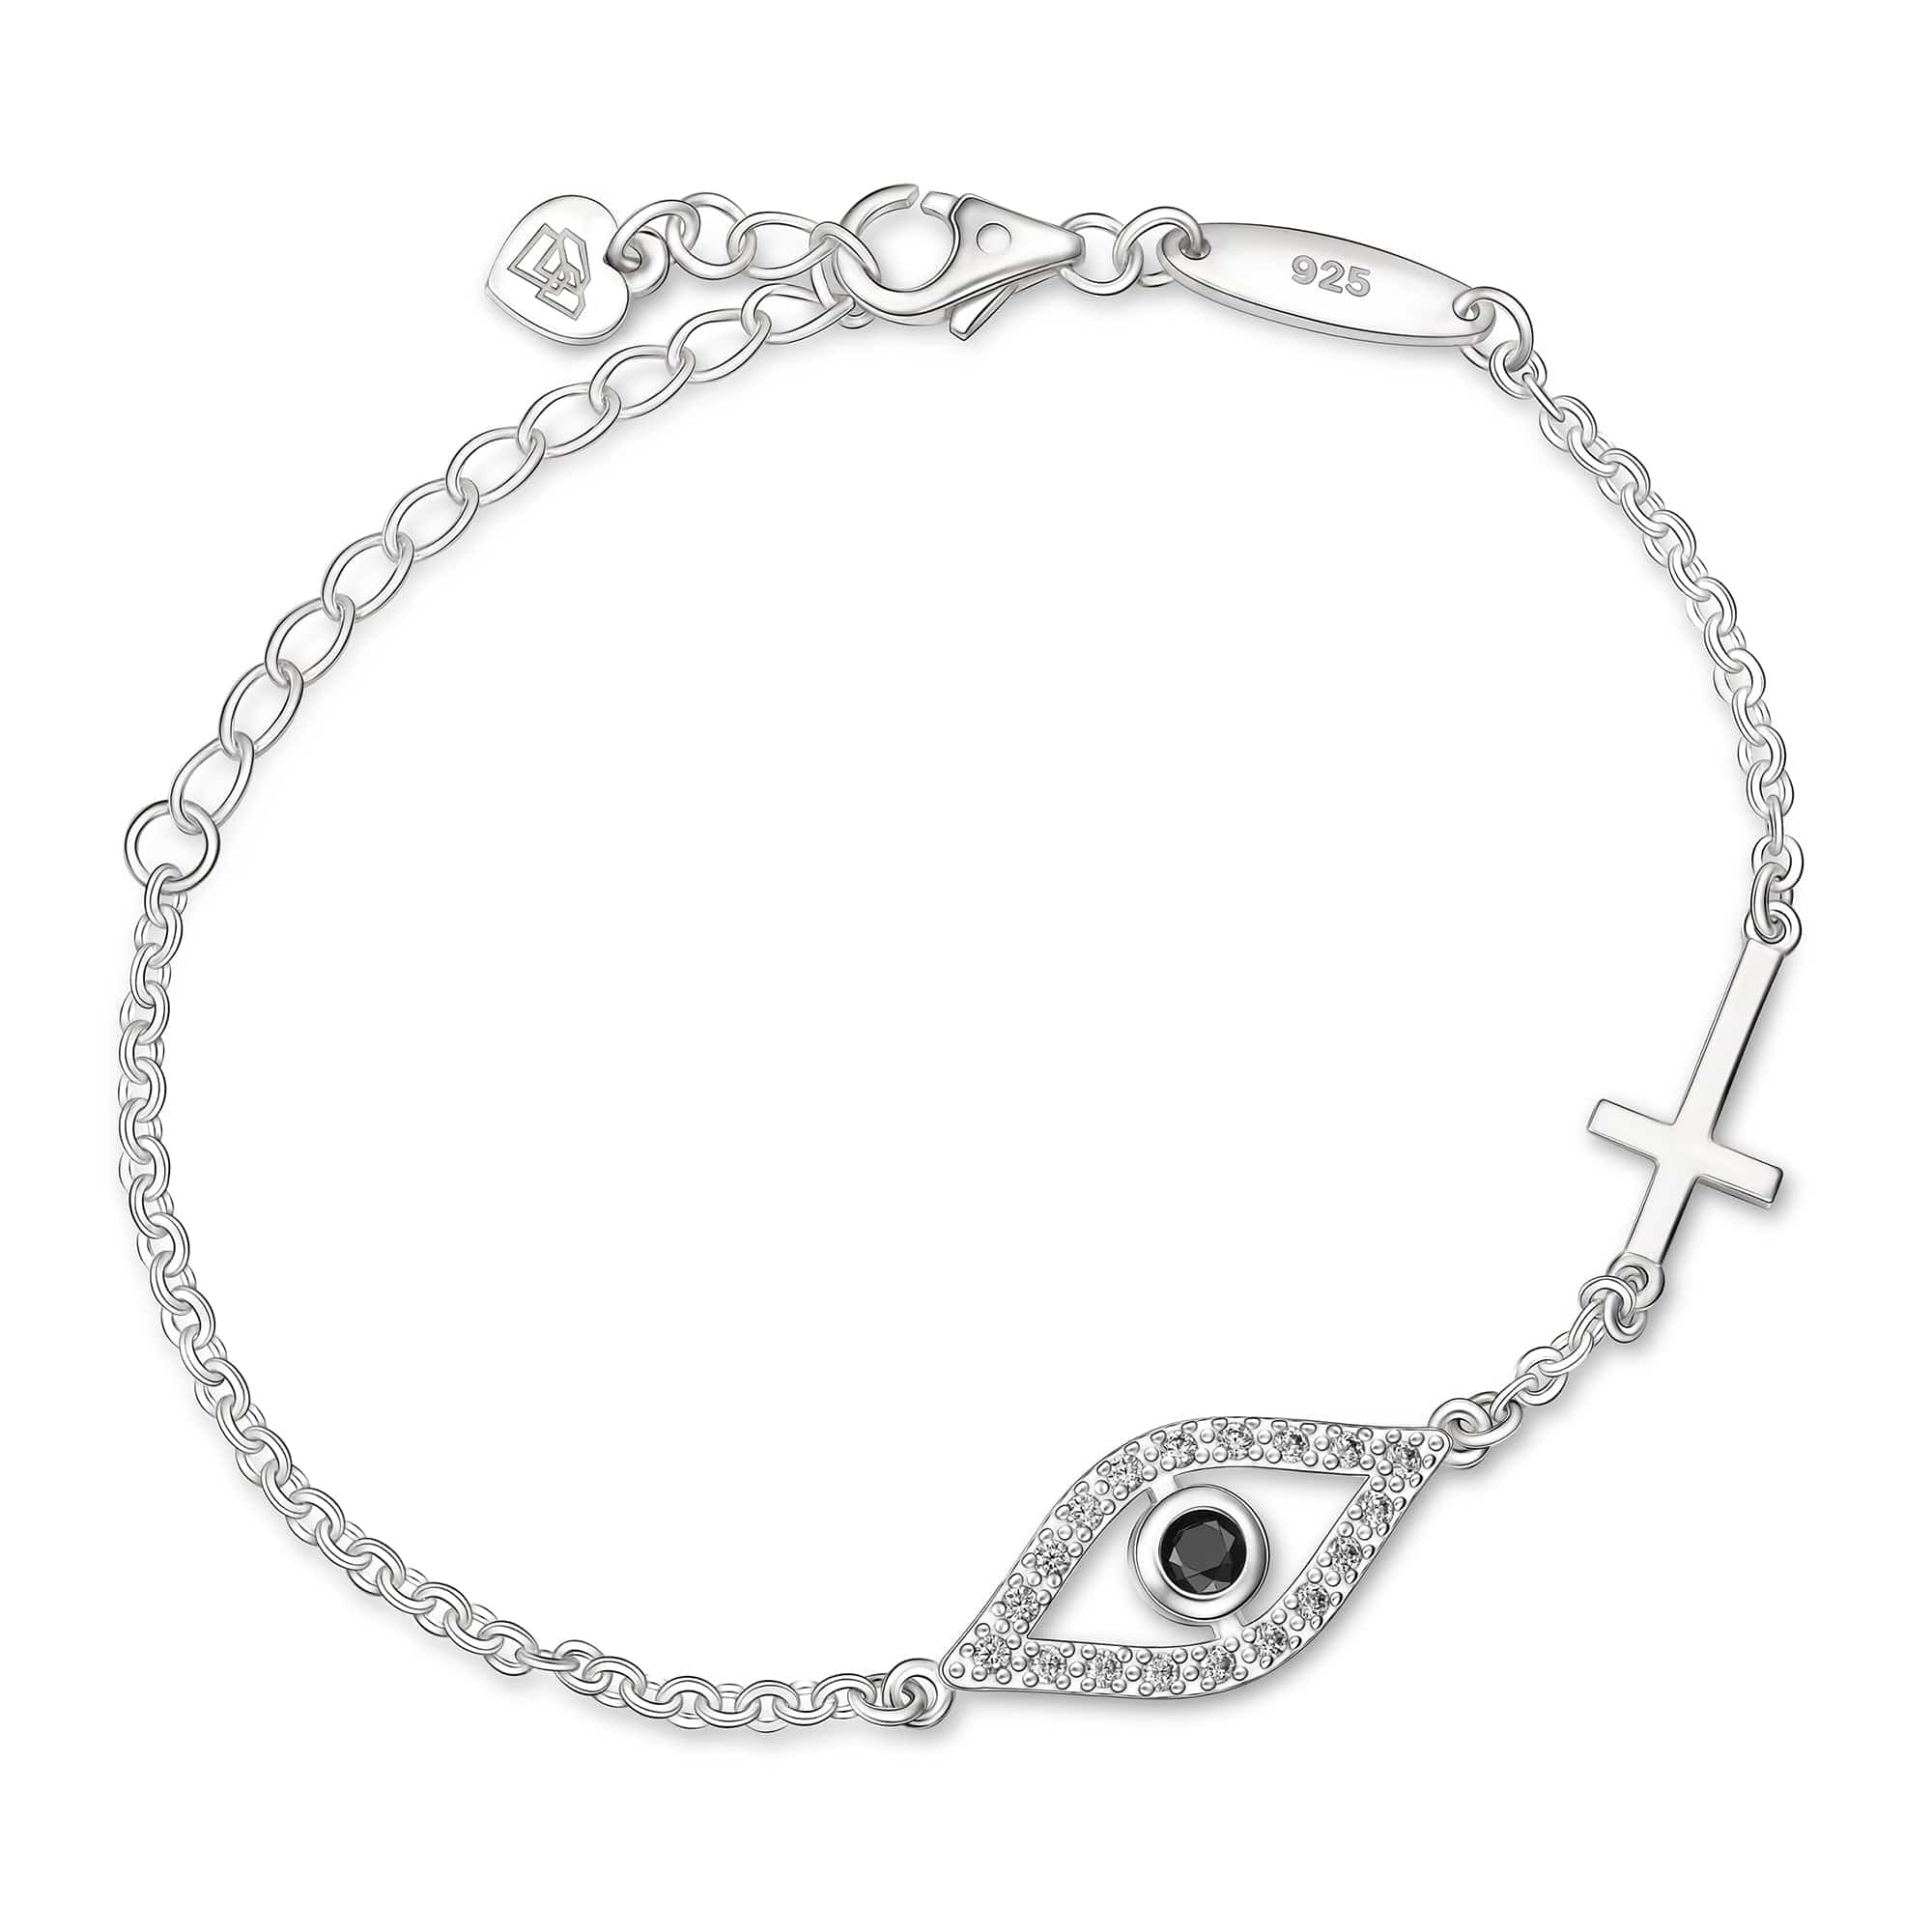 CZ Evil Eye Bracelet with Sterling Silver Cross Charm Bracelet